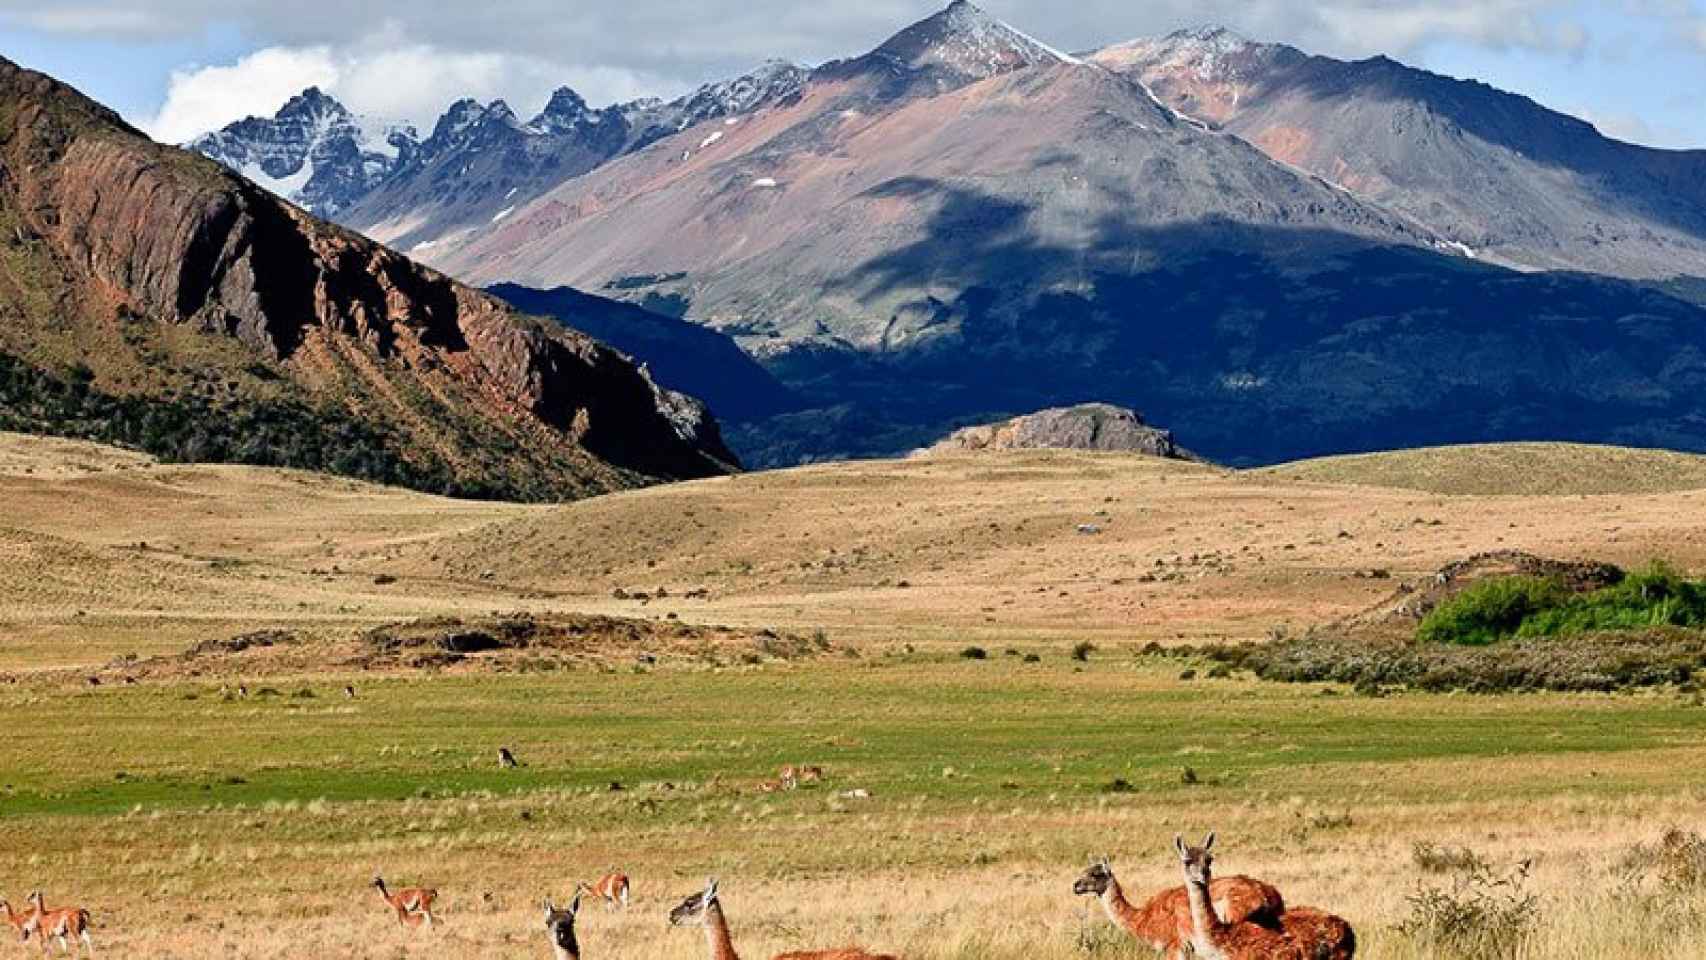 La fundación de los Tompkins invirtió millones de dólares en poner en marcha el Parque Patagonia que aparece en la imagen.